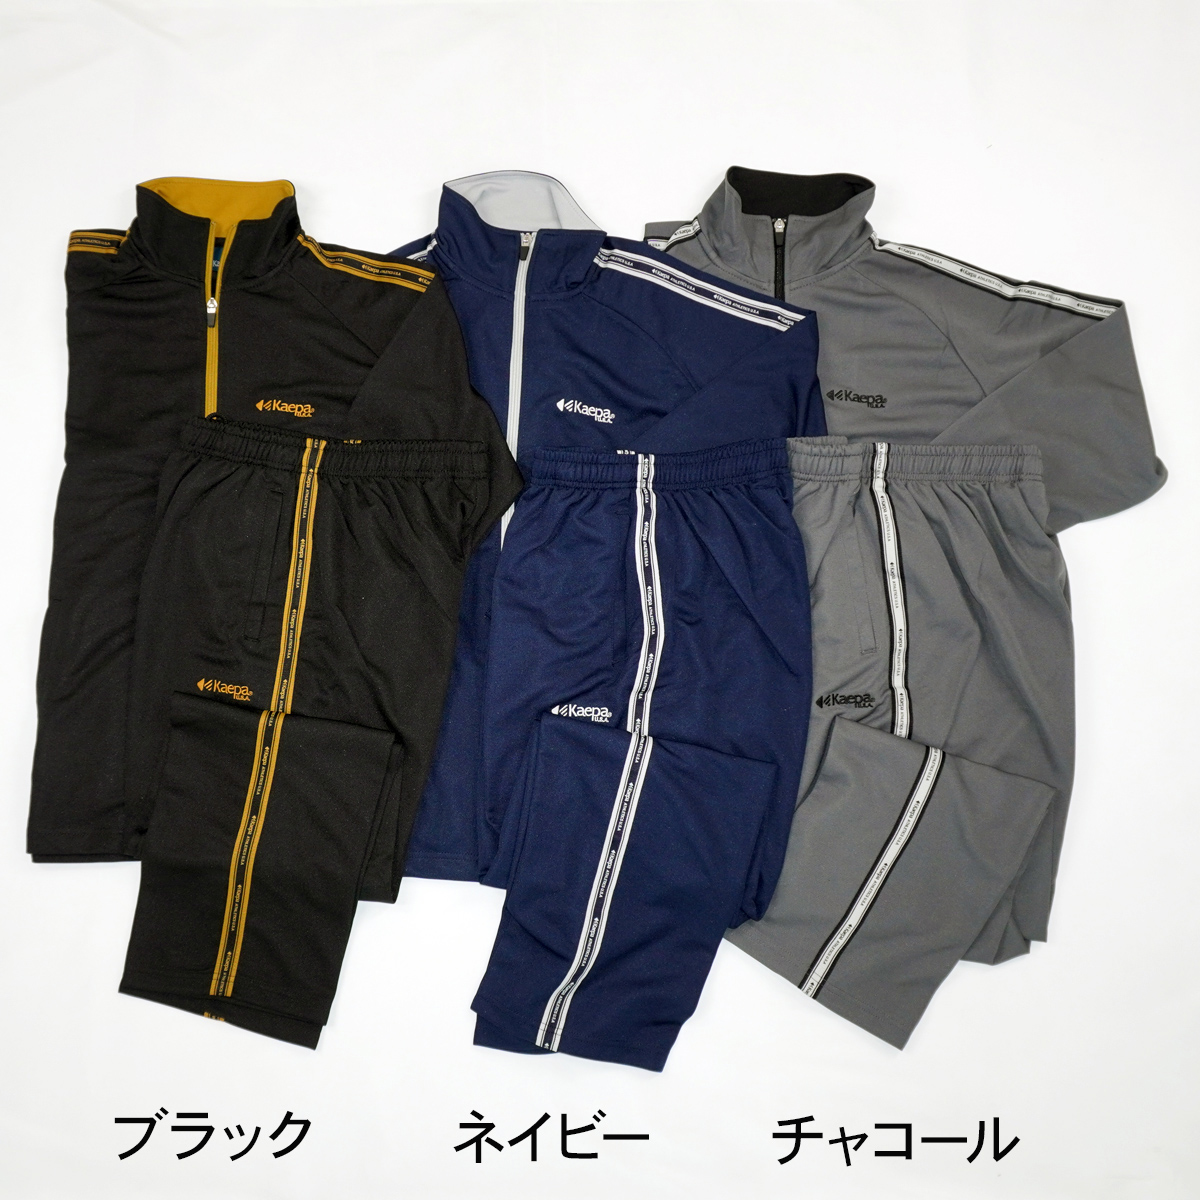 Kaepa джерси мужской верх и низ в комплекте Kei pa тренировка одежда спортивная одежда Zip выше боковой Logo лента KP209 бесплатная доставка [AP]